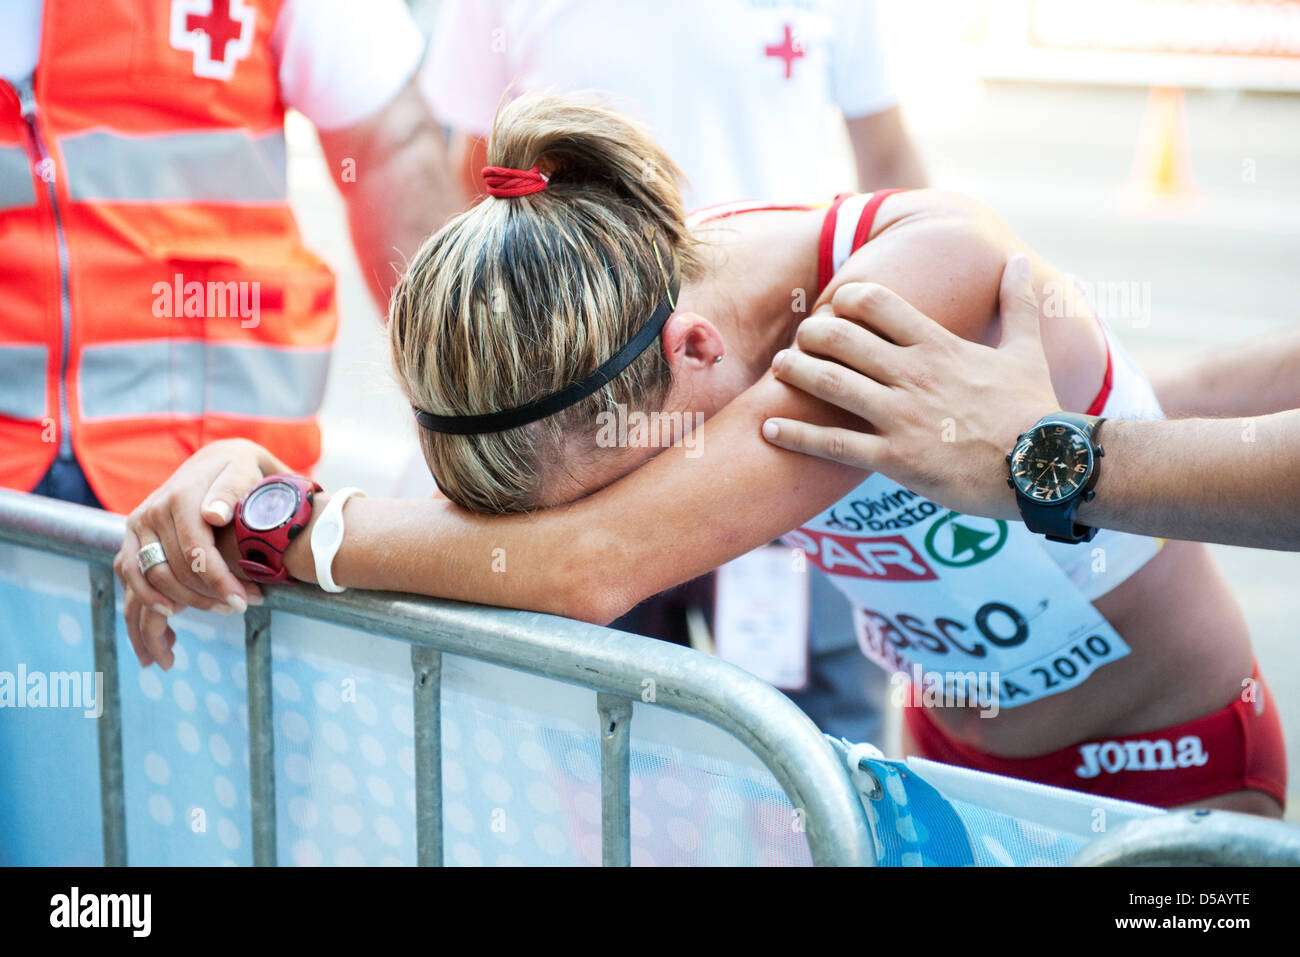 L'athlète espagnole Maria Vasco se penche épuisé contre un obstacle après une crampe dans le pied l'a forcée à quitter la course chez les femmes de la marche athlétique à concurrence de 20 kilomètres l'athlétisme champion dans Barcelone, Espagne, 28 juillet 2010. Foto : BERND THISSEN Banque D'Images